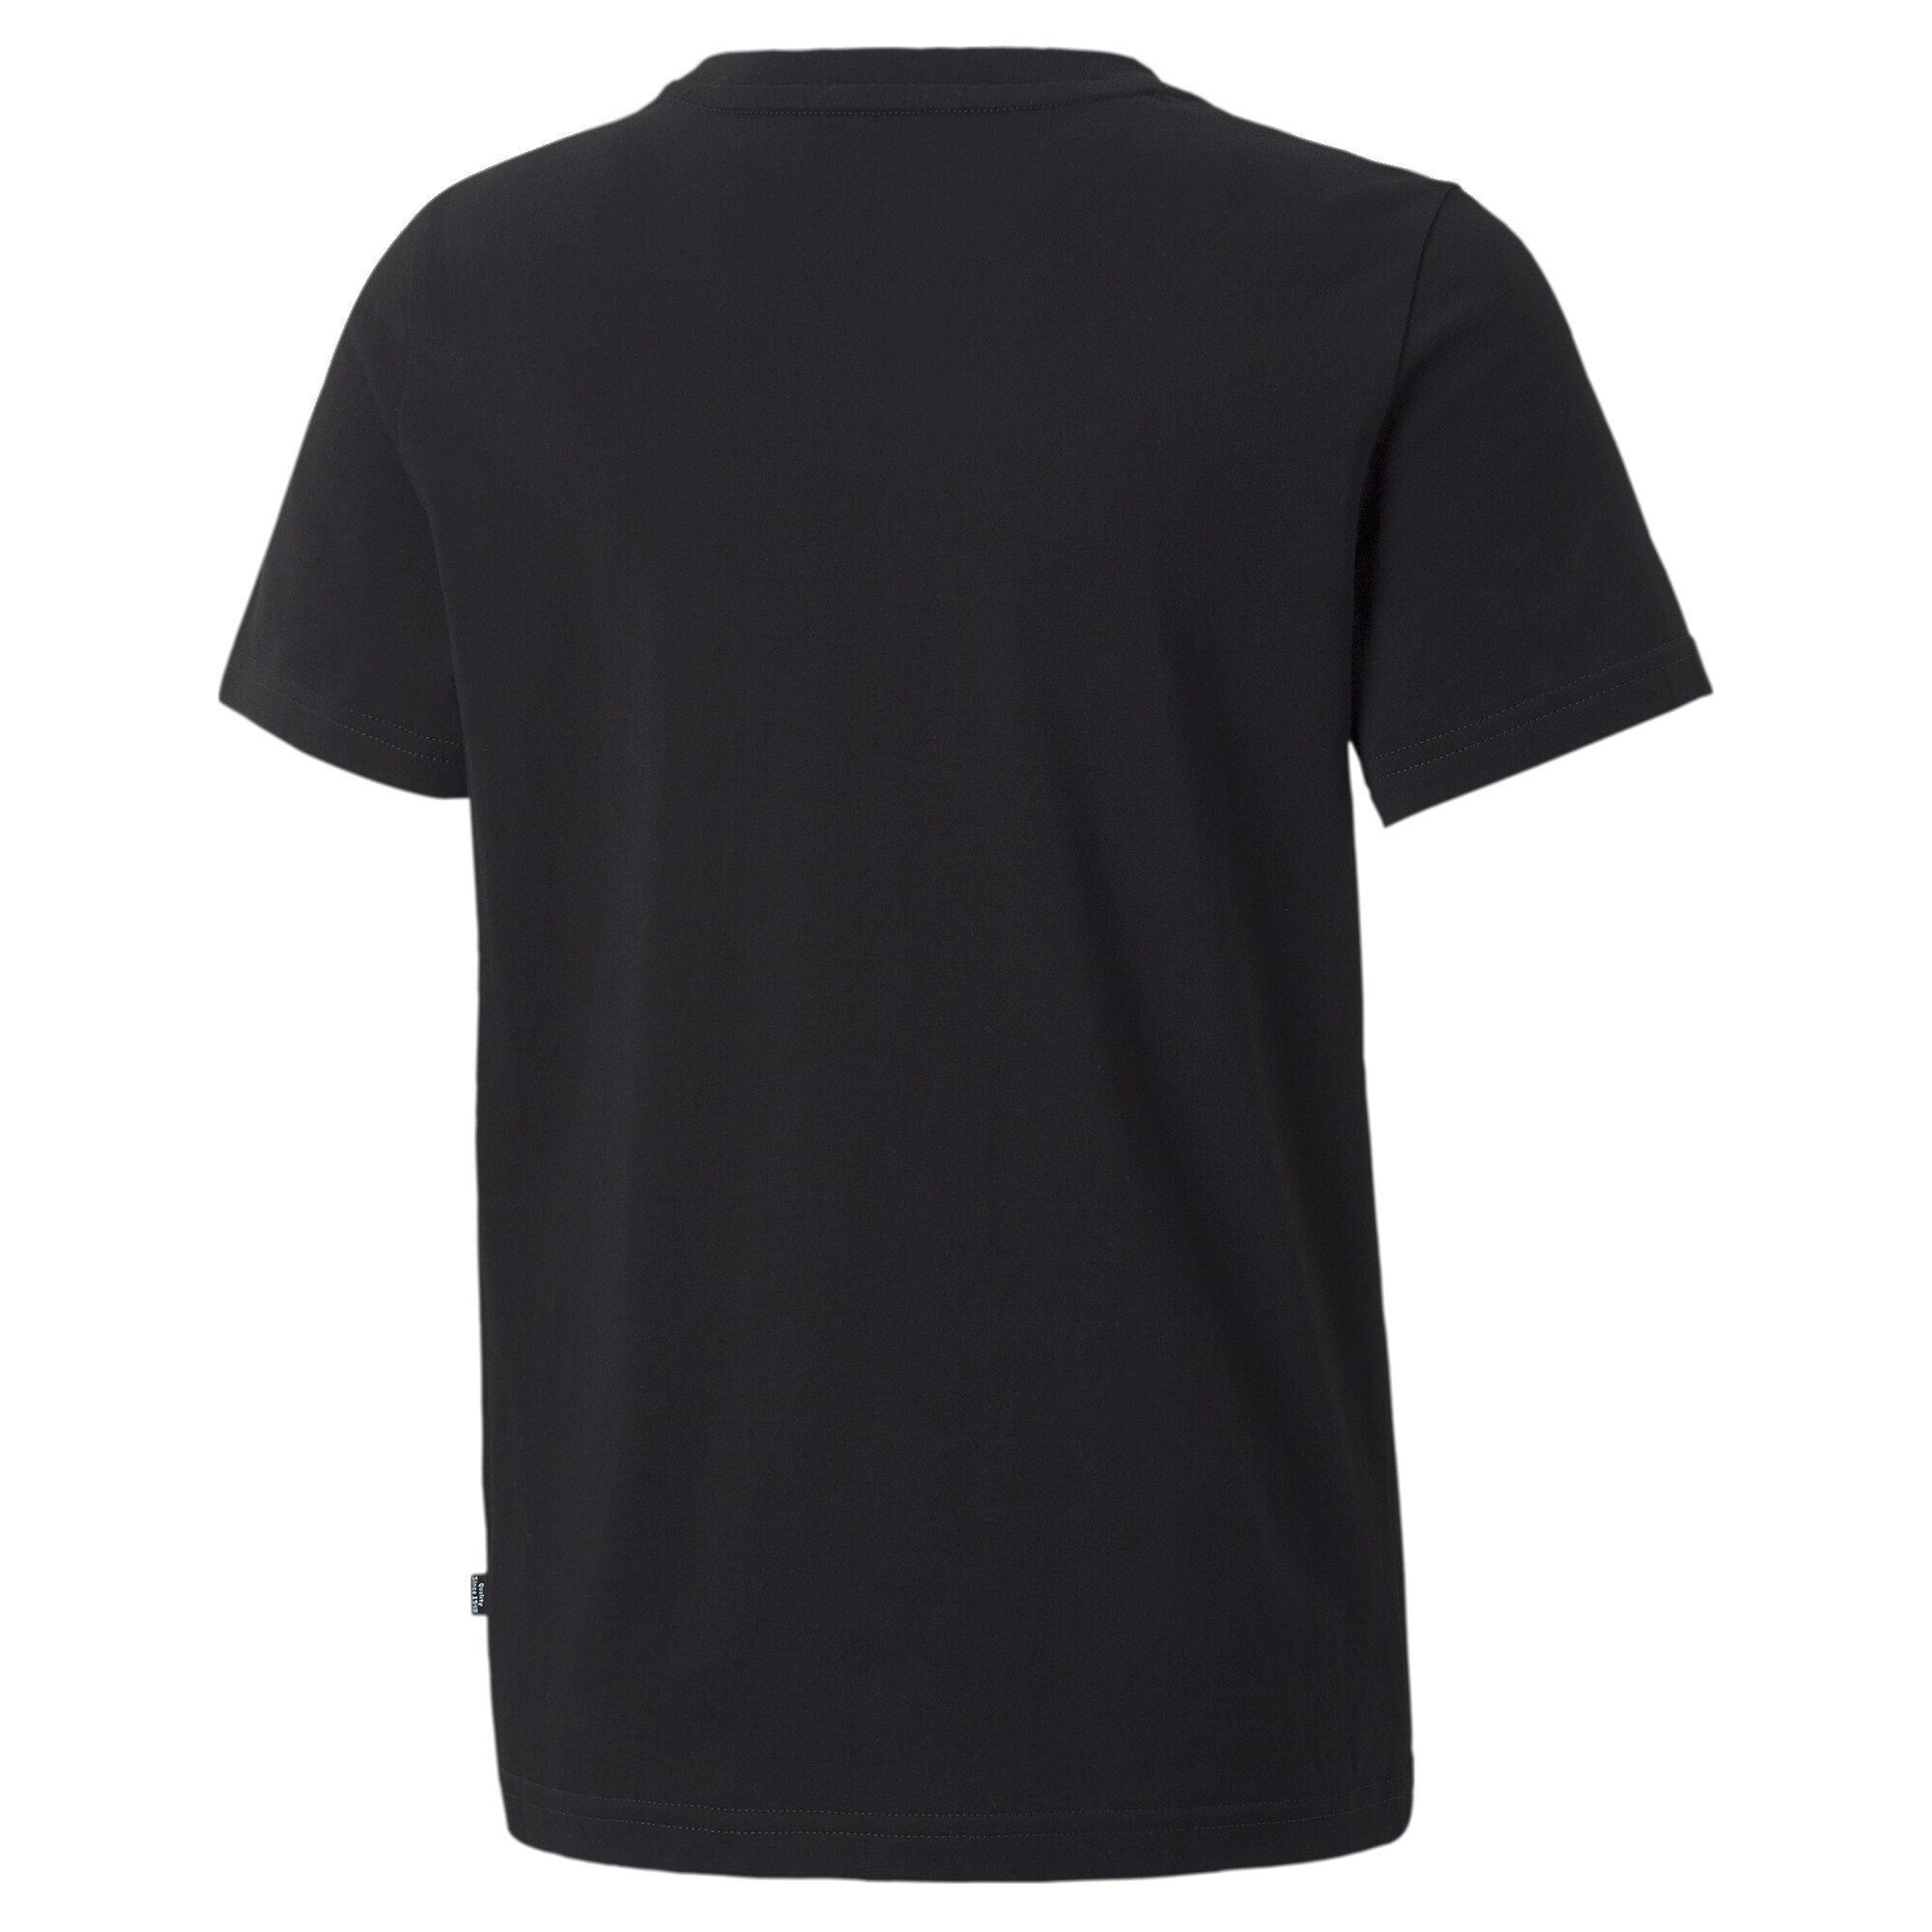 Xx PUMA Jugendliche Black T-Shirt Blockfarben in Essentials+ T-Shirt